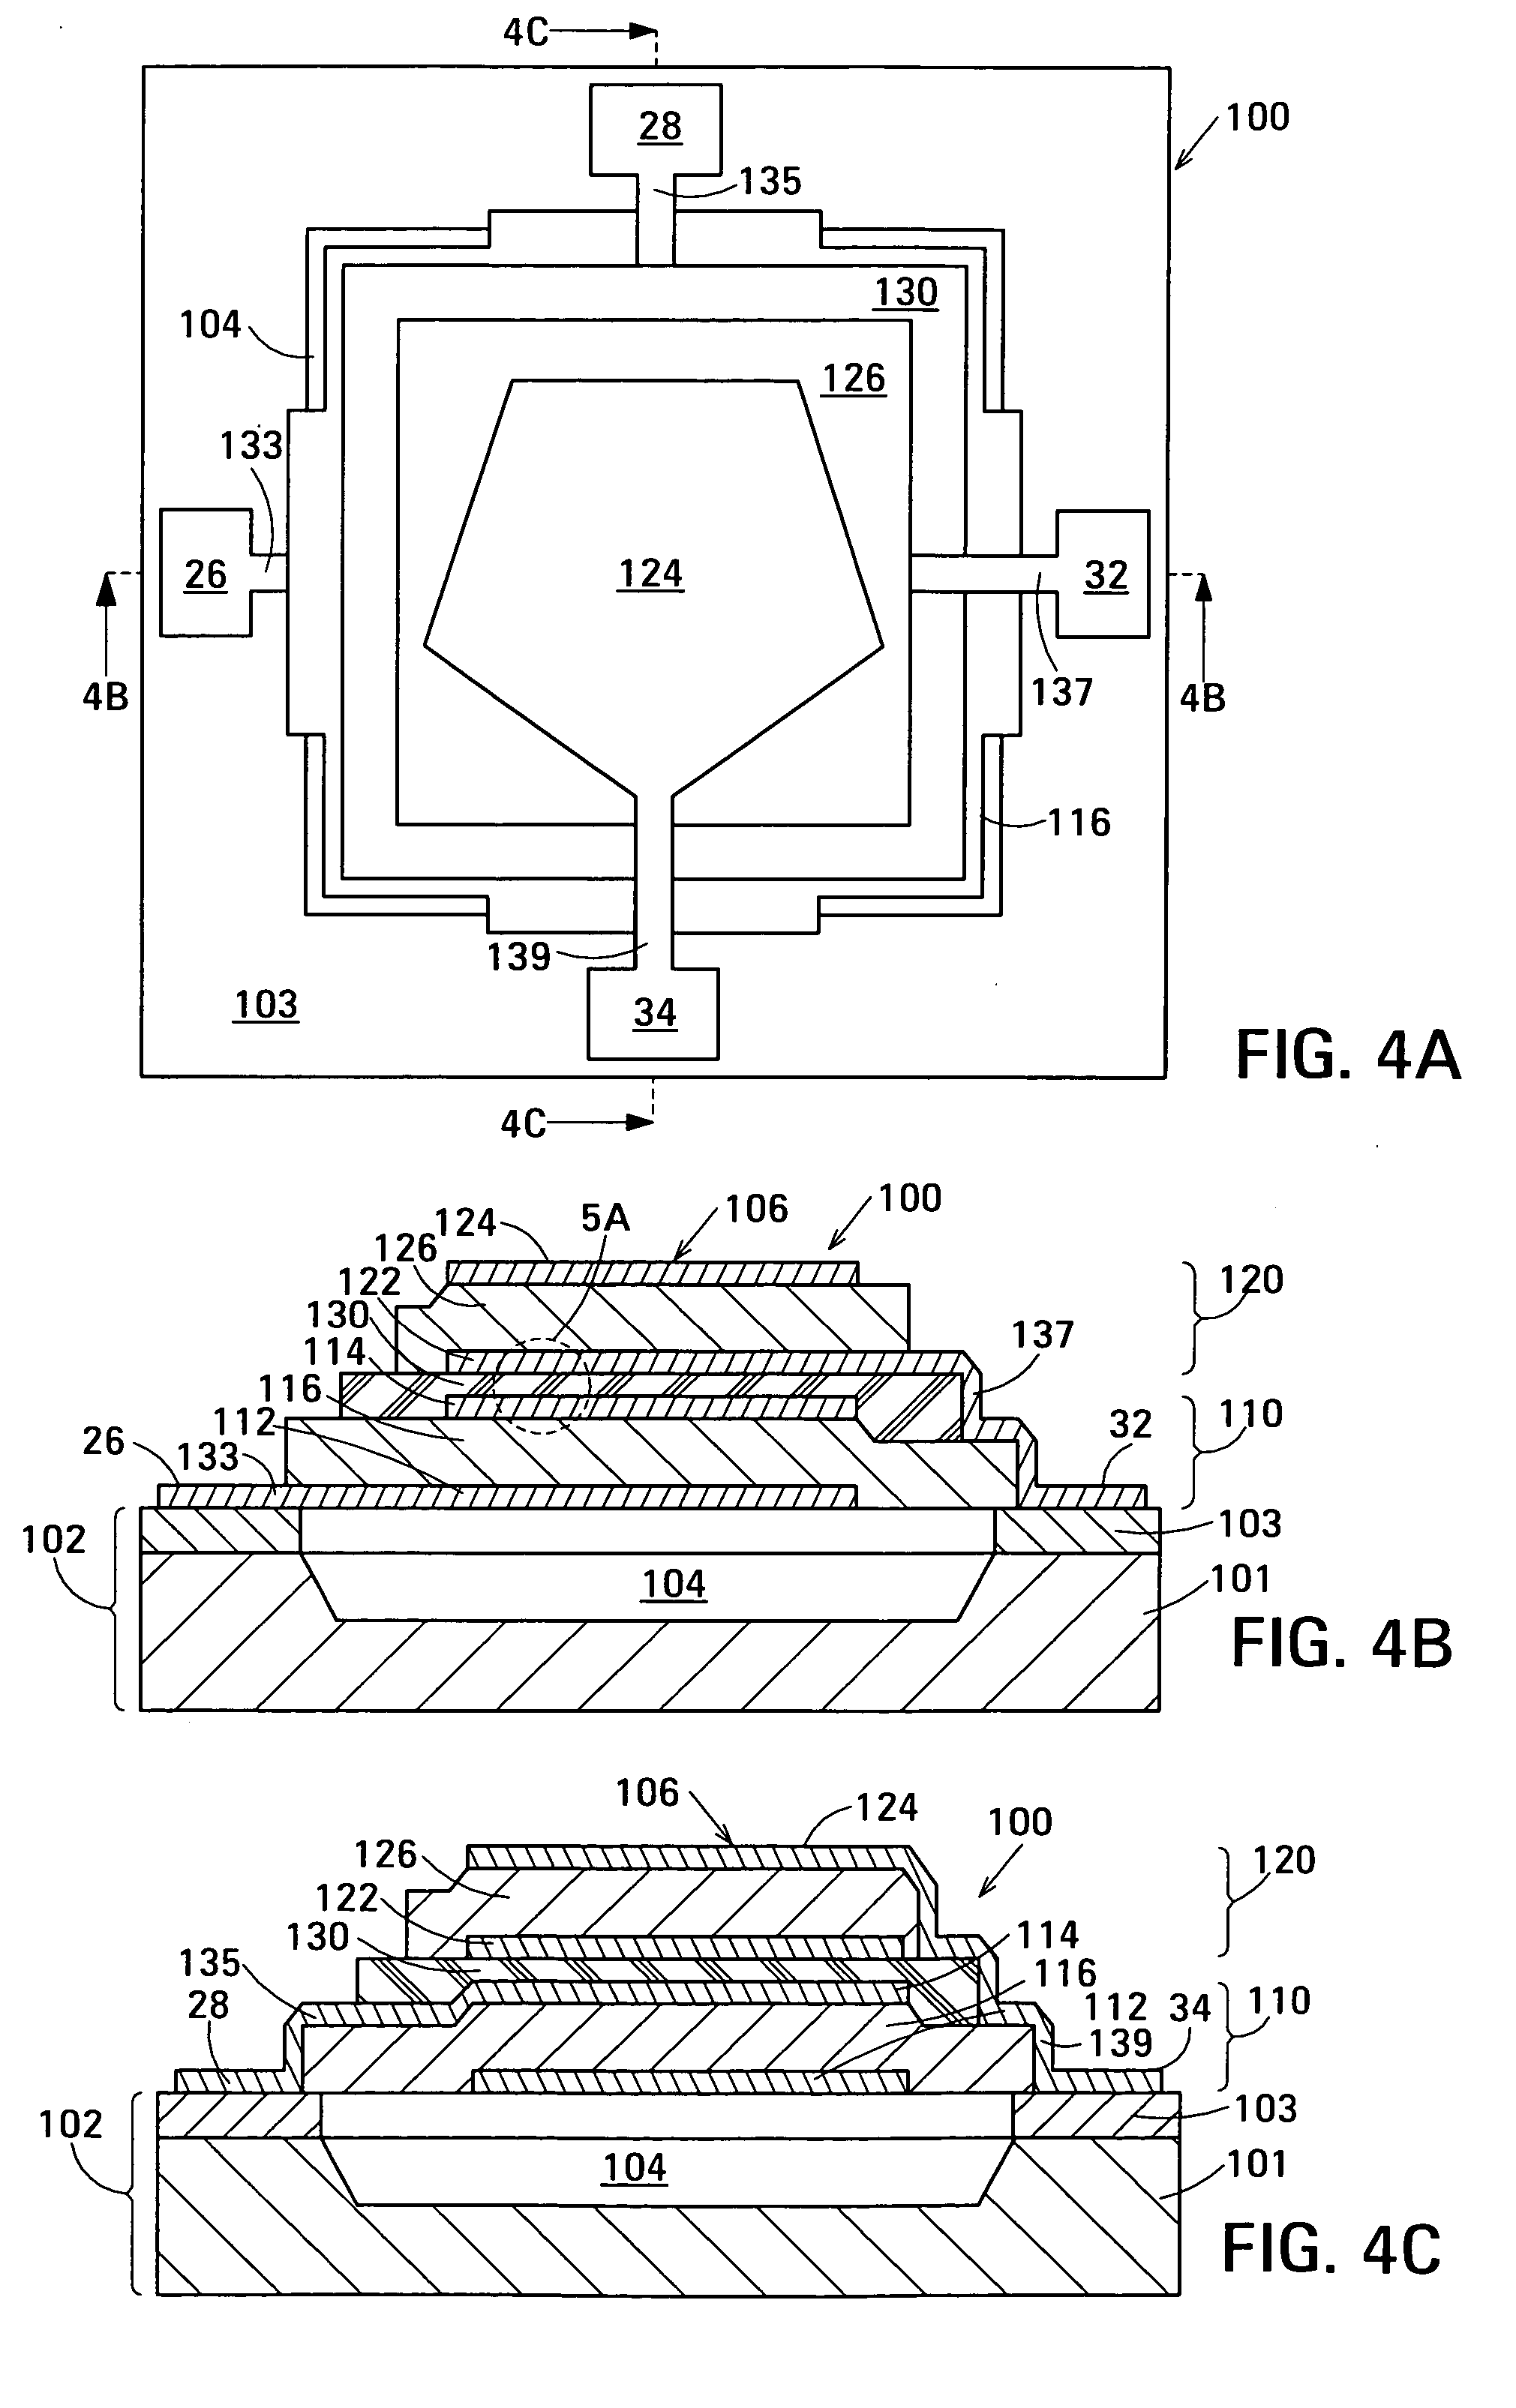 Acoustic galvanic isolator incorporating single decoupled stacked bulk acoustic resonator